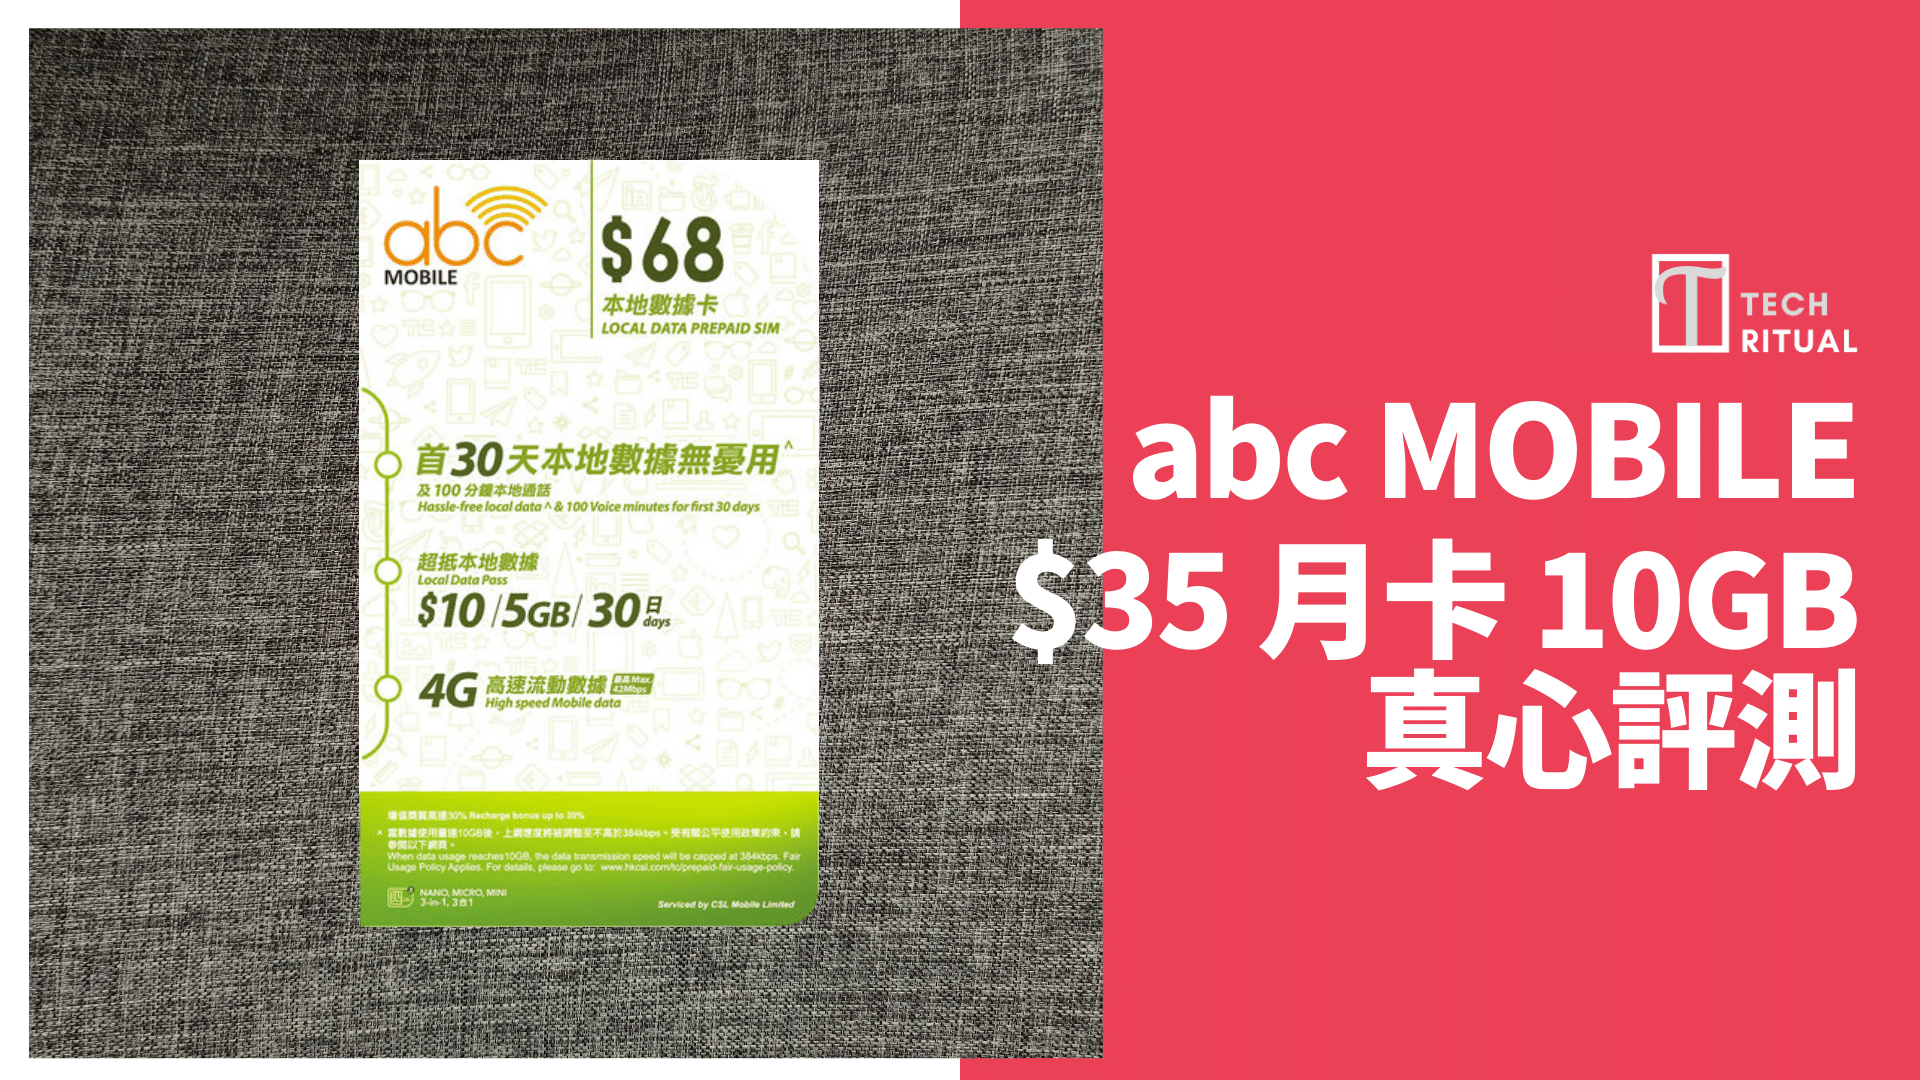 【評測】abc Mobile↷csl  10GB 香港可用儲值月卡，速度達 1Mbps，1GB=.5